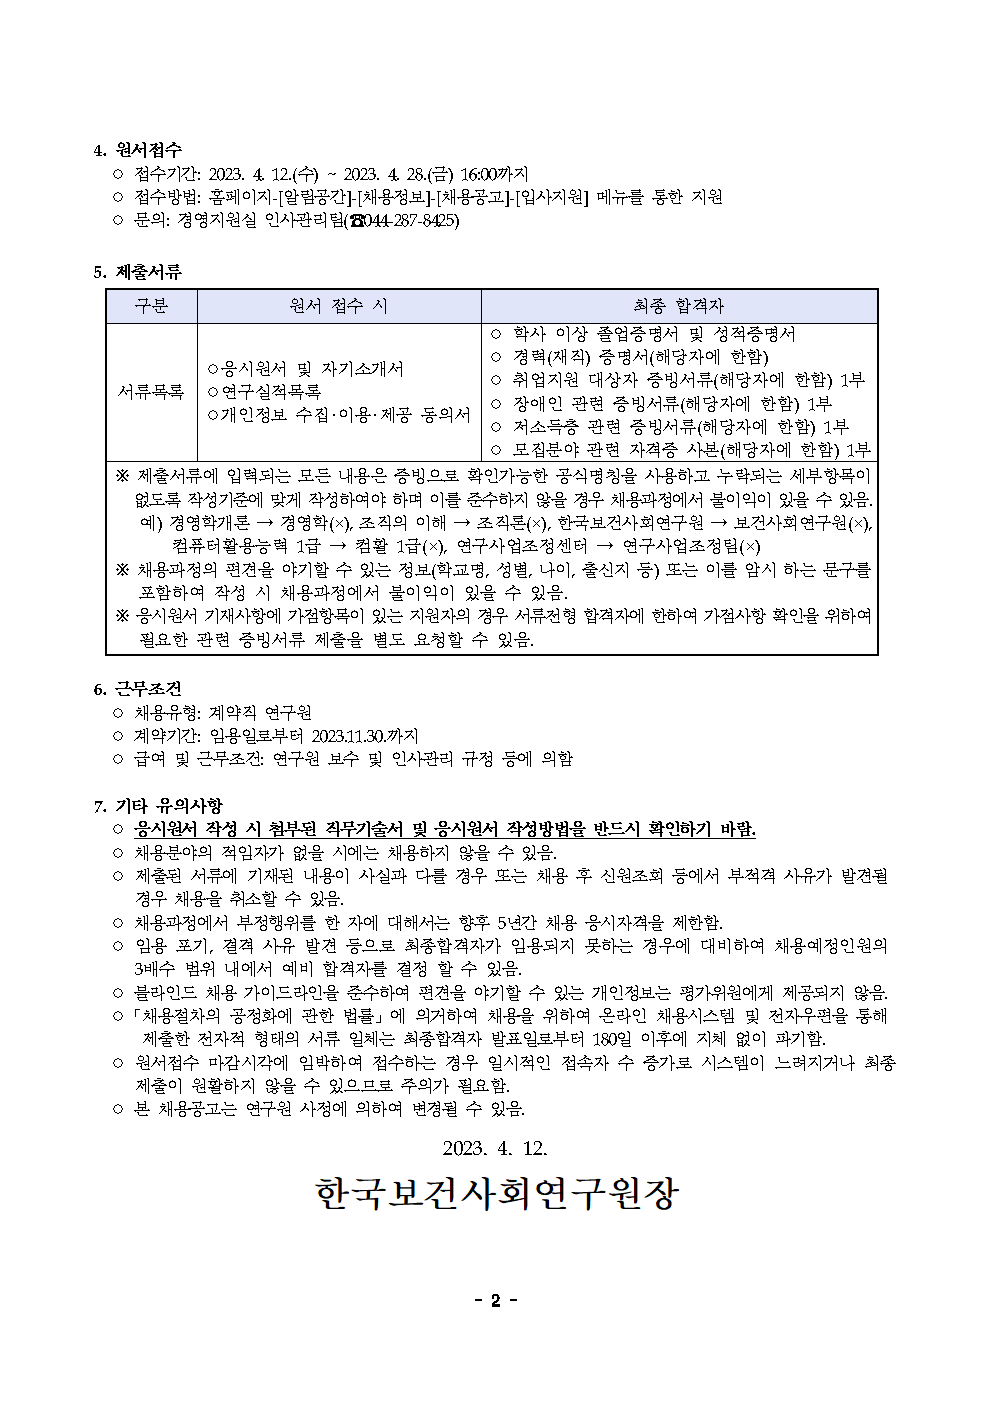 (2/2) [한국보건사회연구원] 계약직 연구원 채용(사회보장재정데이터연구실) - 자세한 내용은 하단 참조